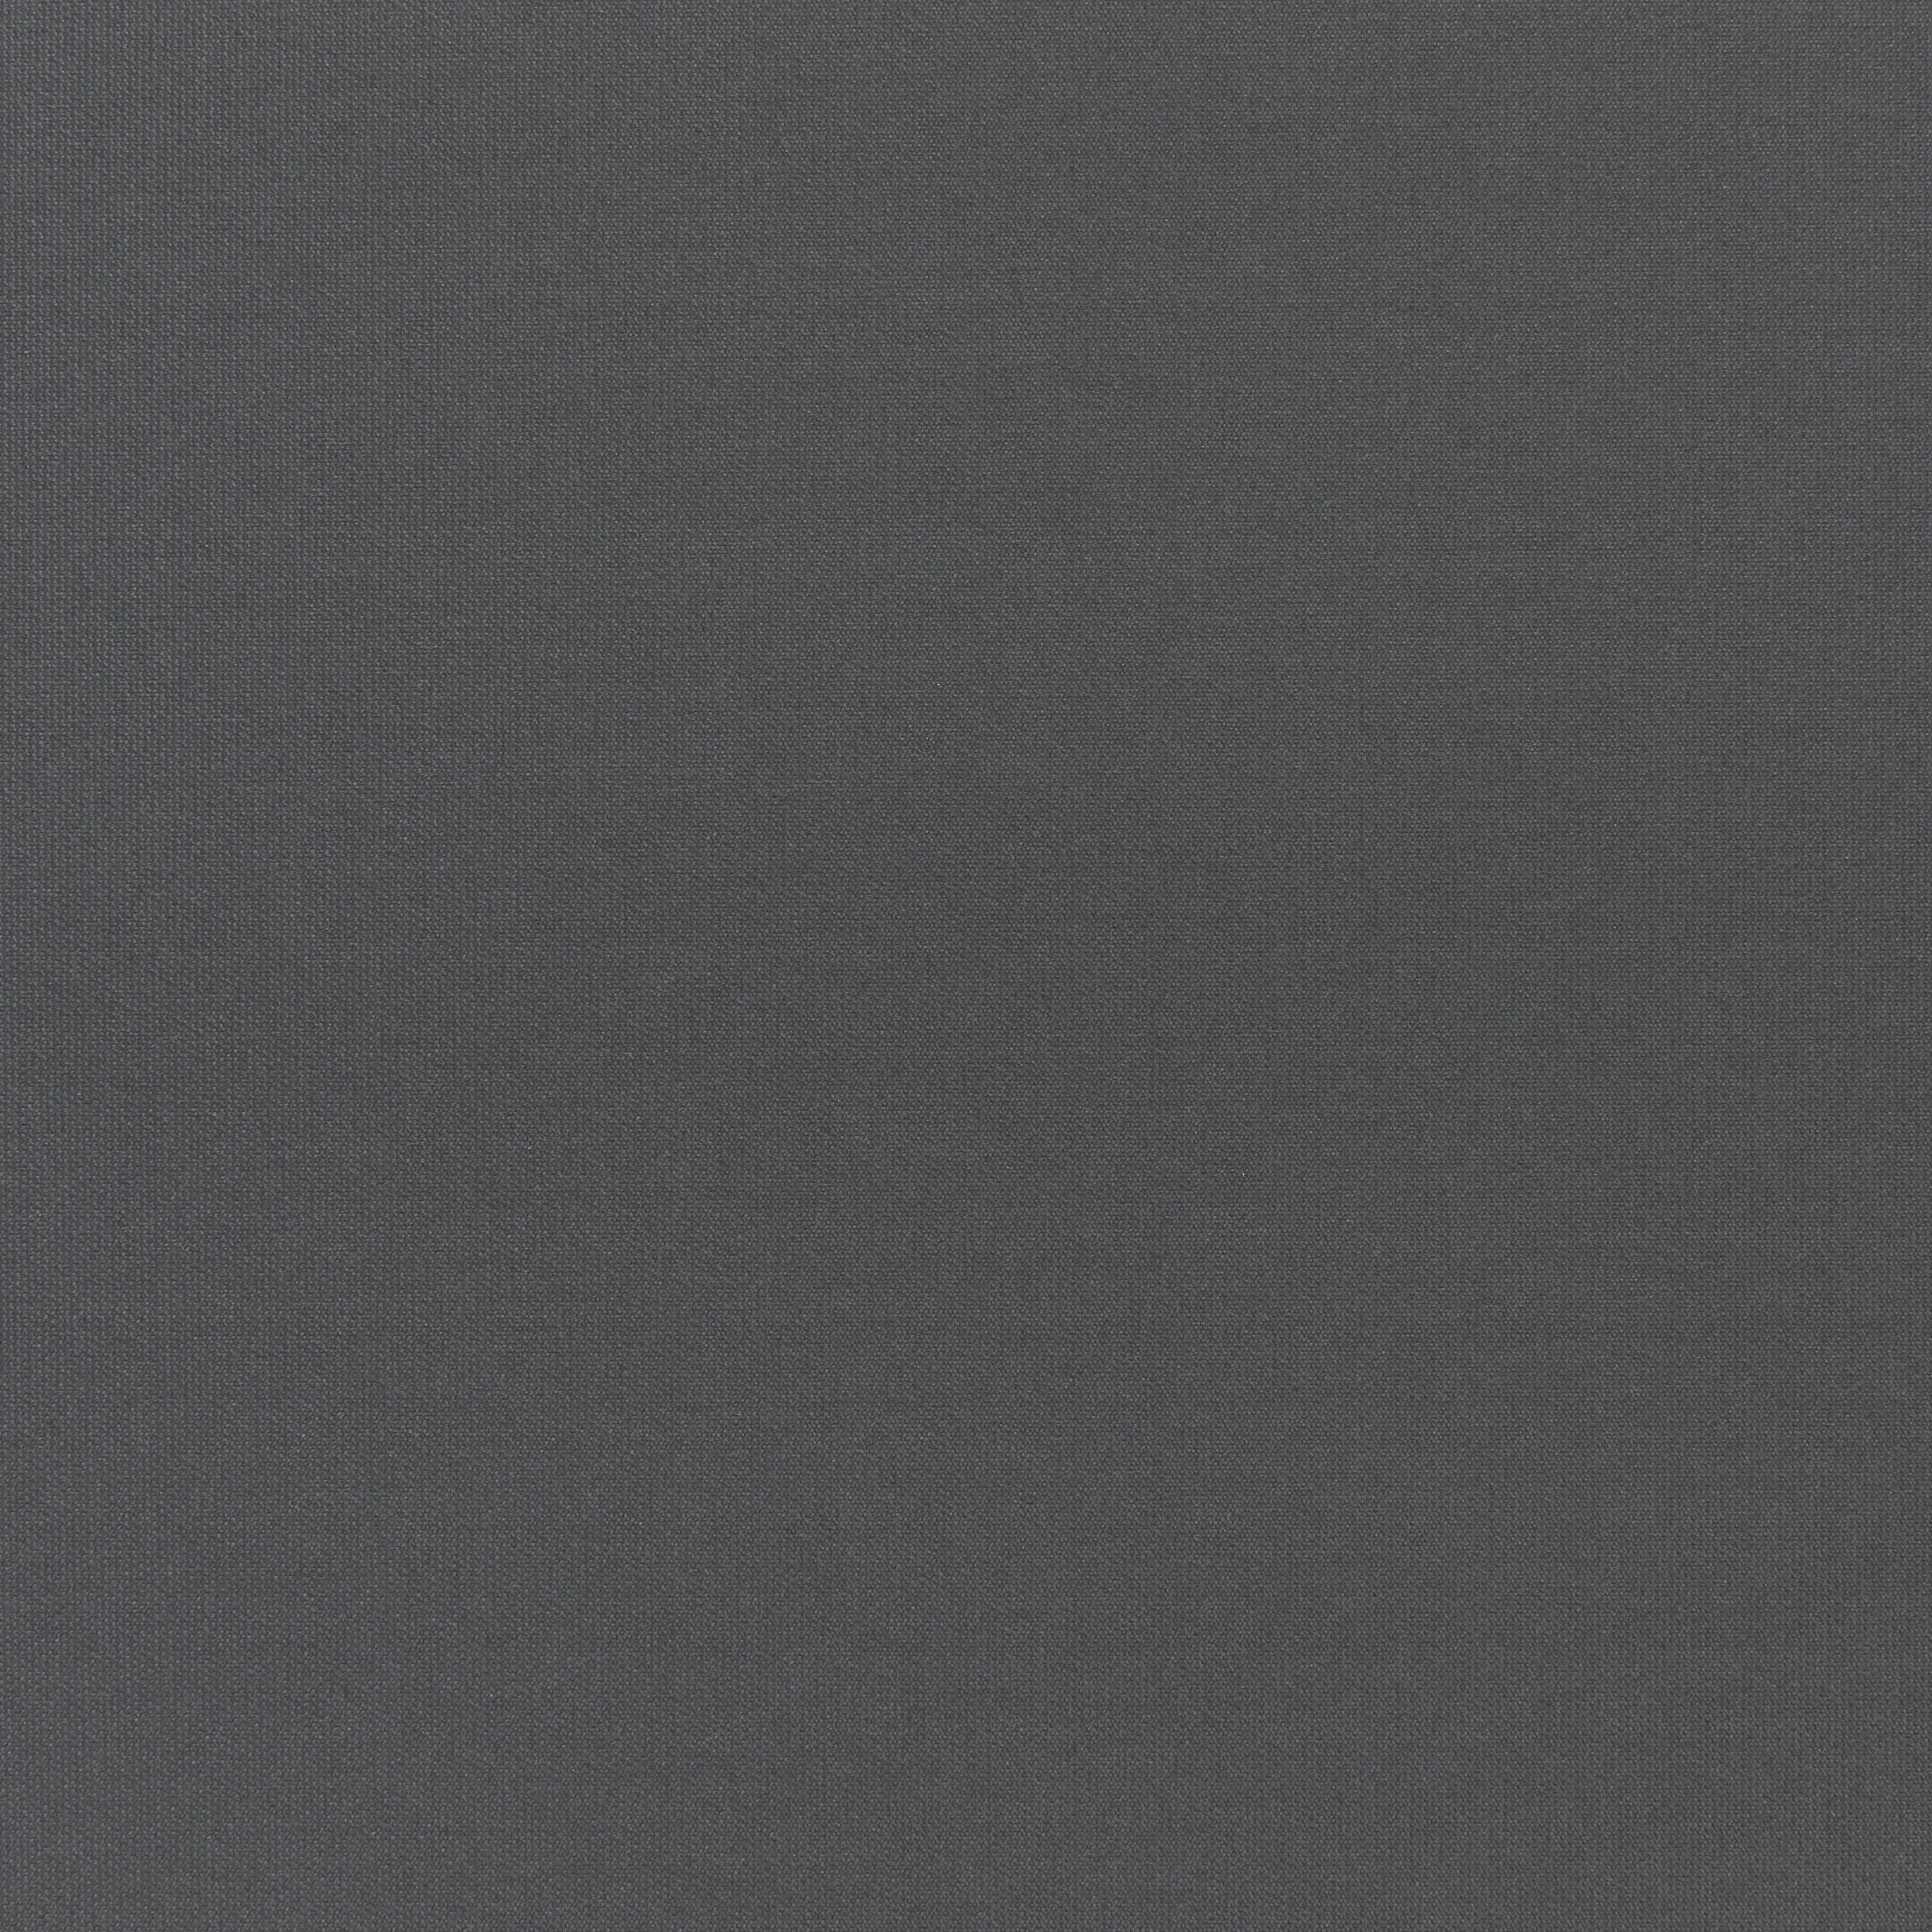 Tenda a rullo oscurante INSPIRE Tokyo grigio scuro 200 x 250 cm - 6